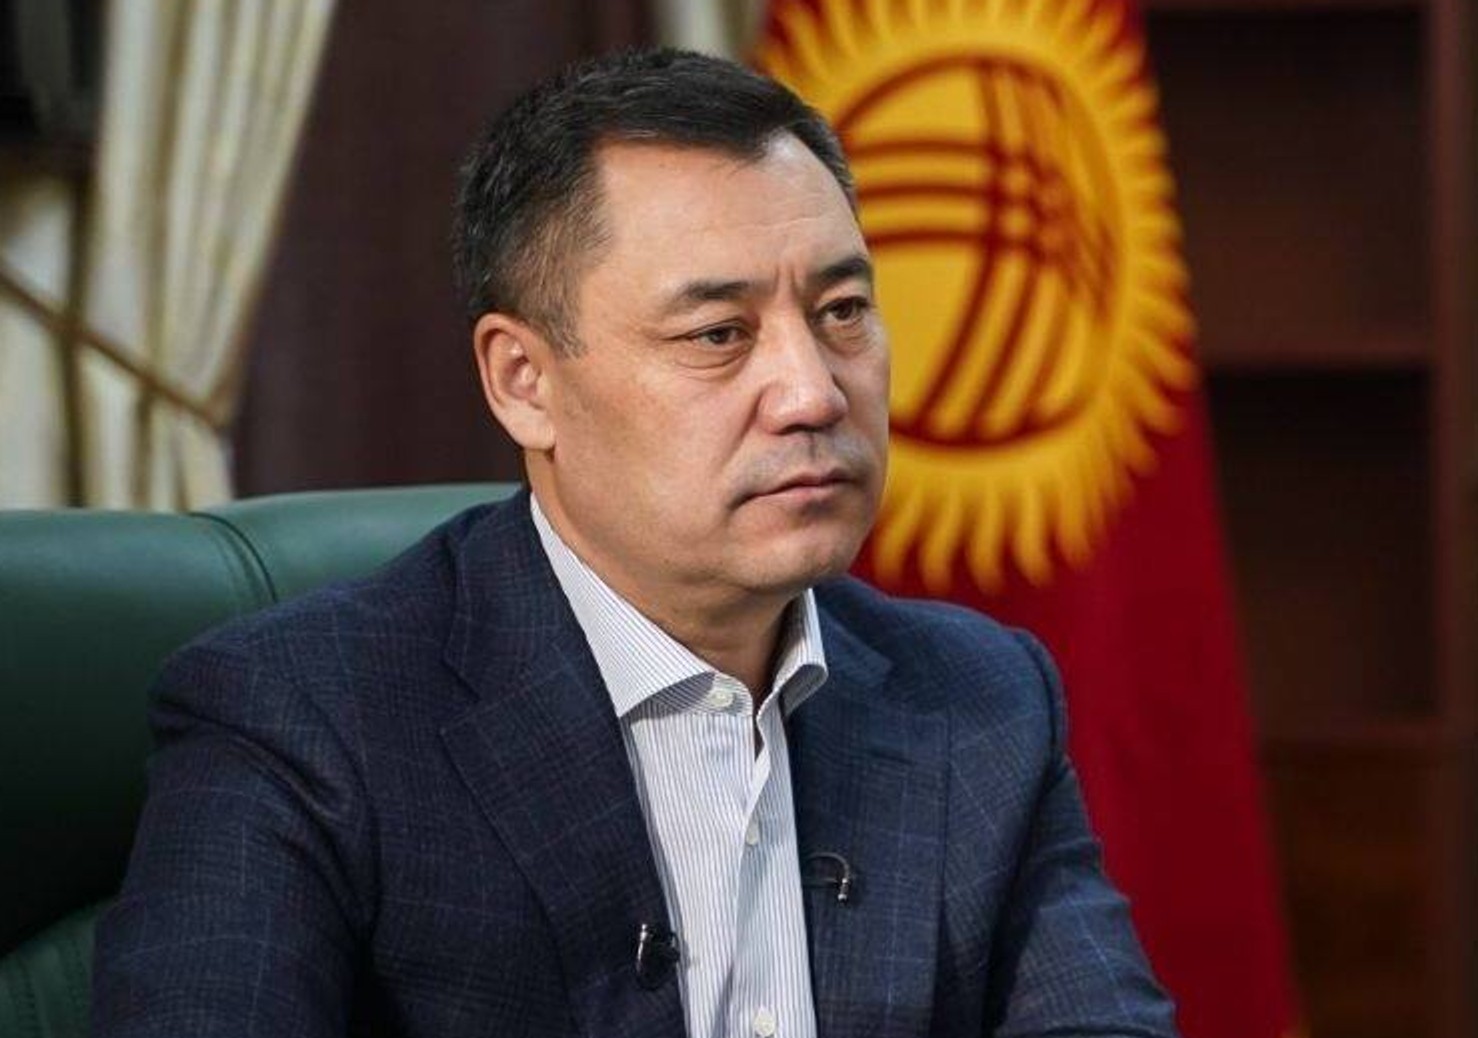 Глава Кыргызстана собрал всех бывших президентов страны для переговоров, чтобы объединить их сторонников